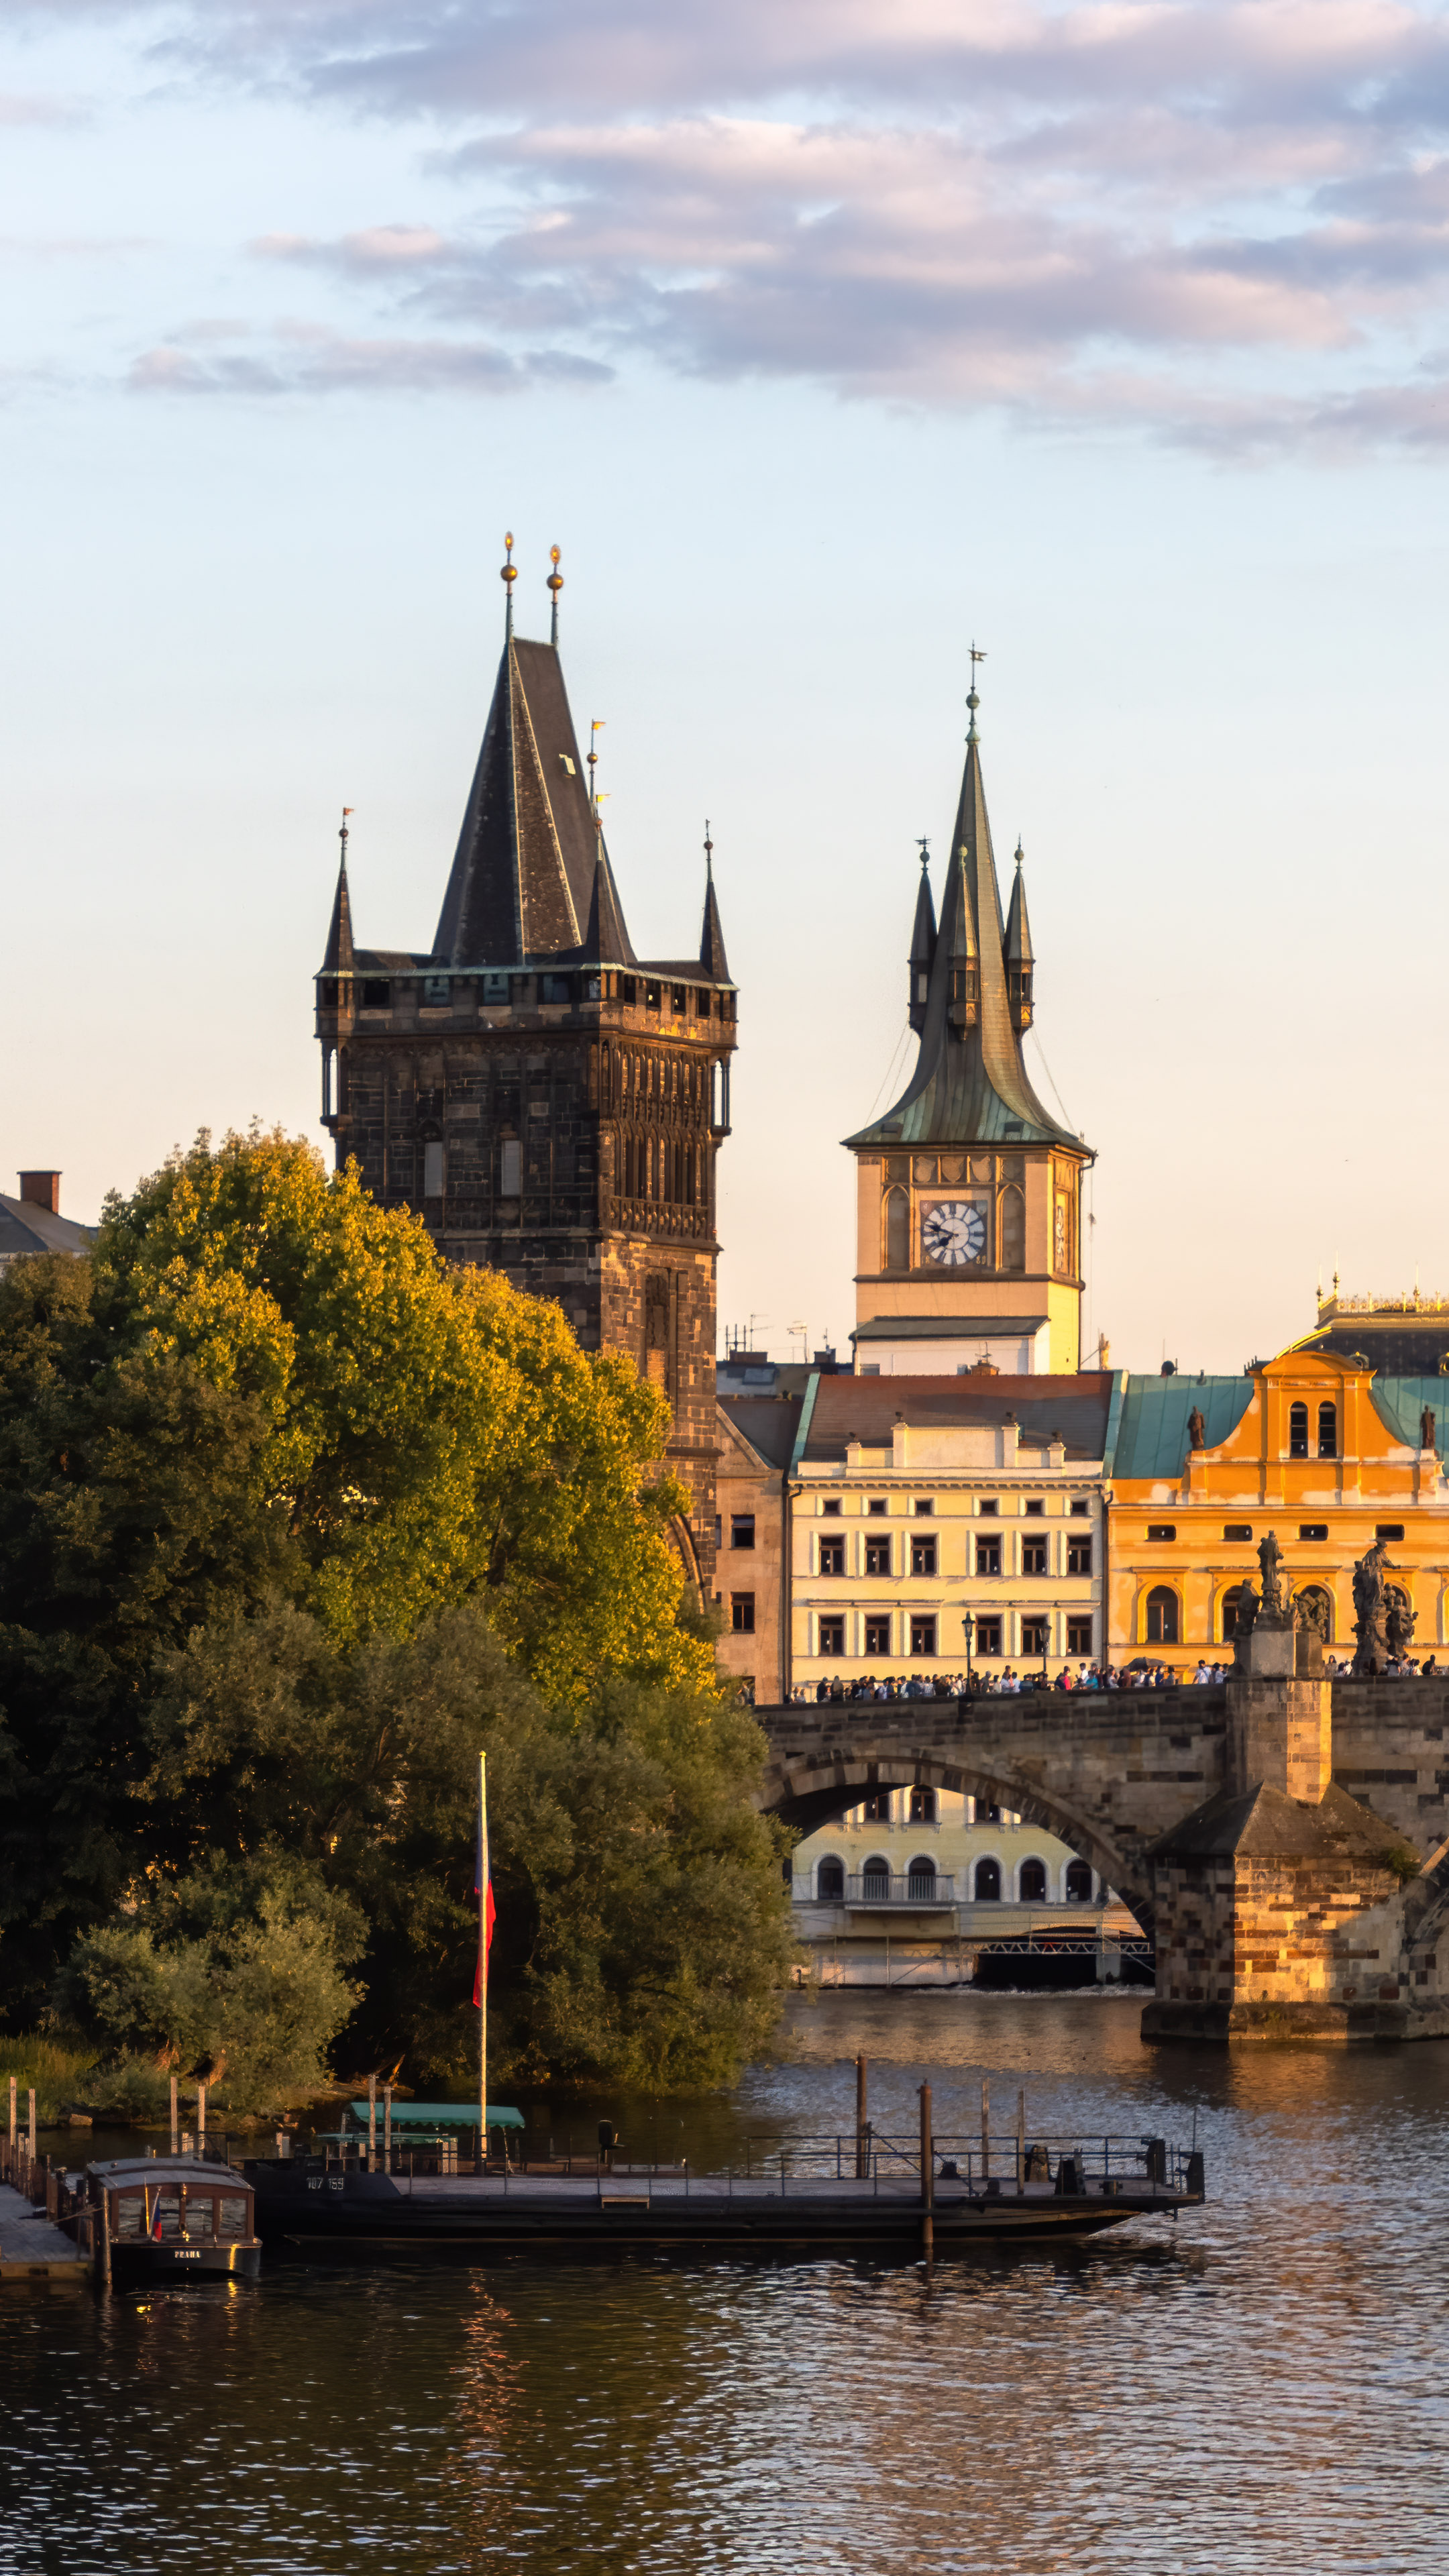 Transportez votre iPhone vers le paysage pittoresque de Prague avec notre fond d’écran de la ville de Prague, vous immergeant dans le charme et la beauté historique de ce joyau européen.